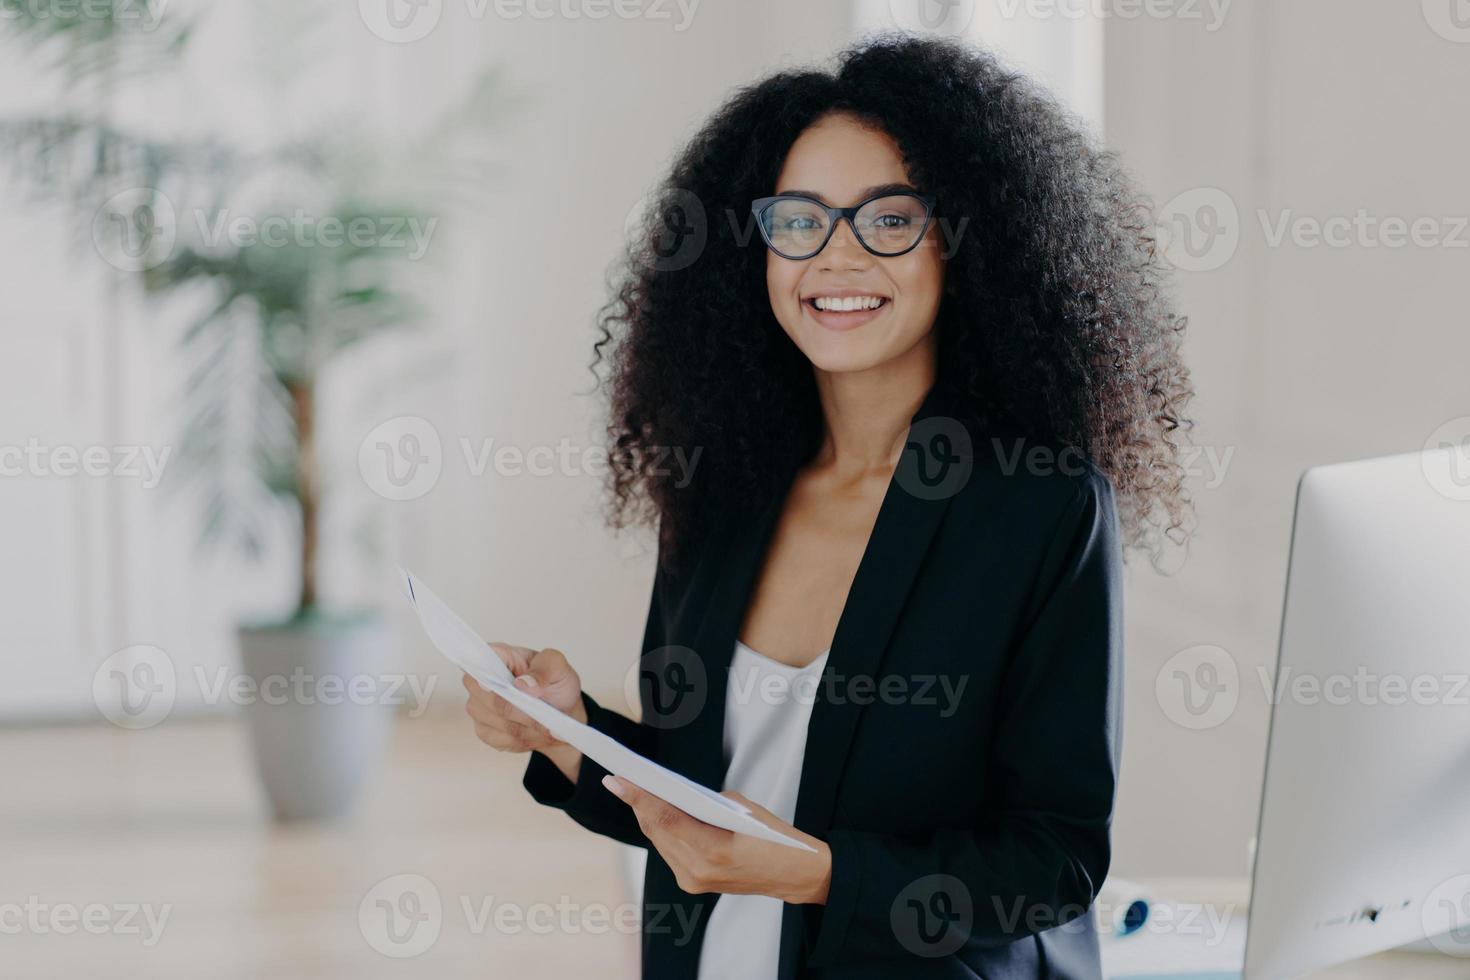 foto de una empresaria feliz con peinado afro, estudia documentación, usa gafas y ropa elegante, se encuentra en el interior de la oficina, se prepara para presentar sus ideas de negocios a sus colegas